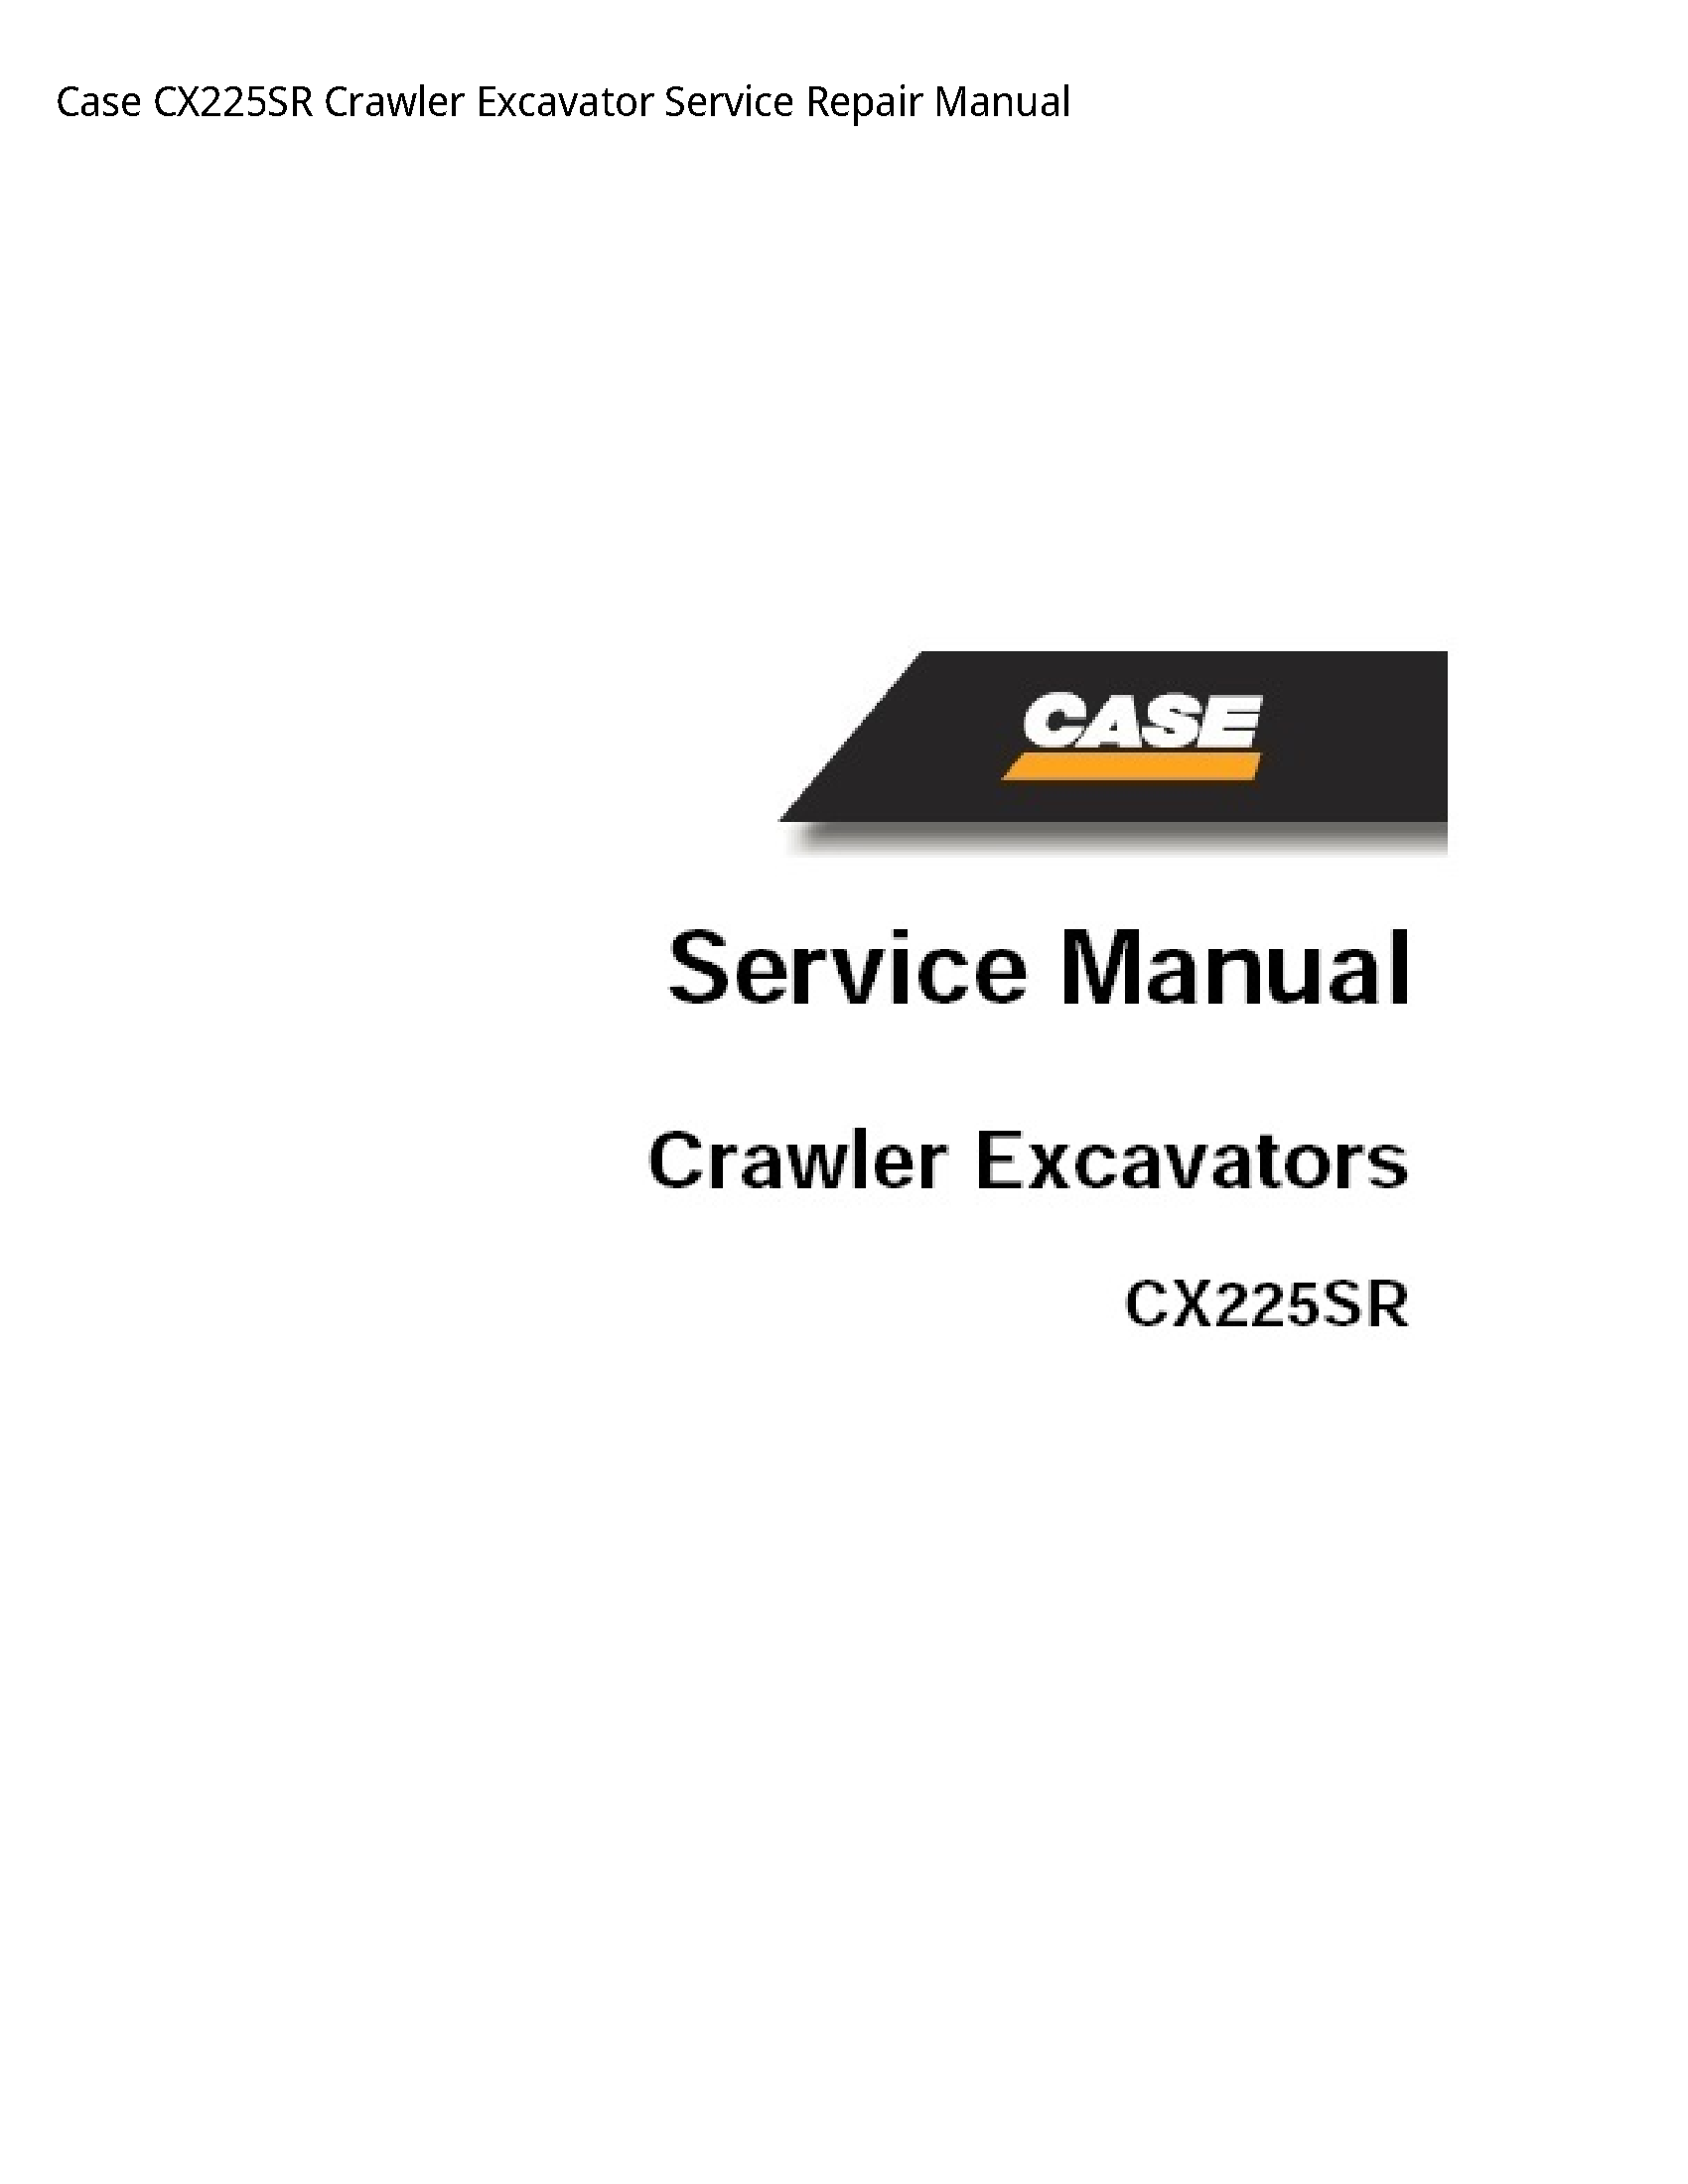 Case/Case IH CX225SR Crawler Excavator manual